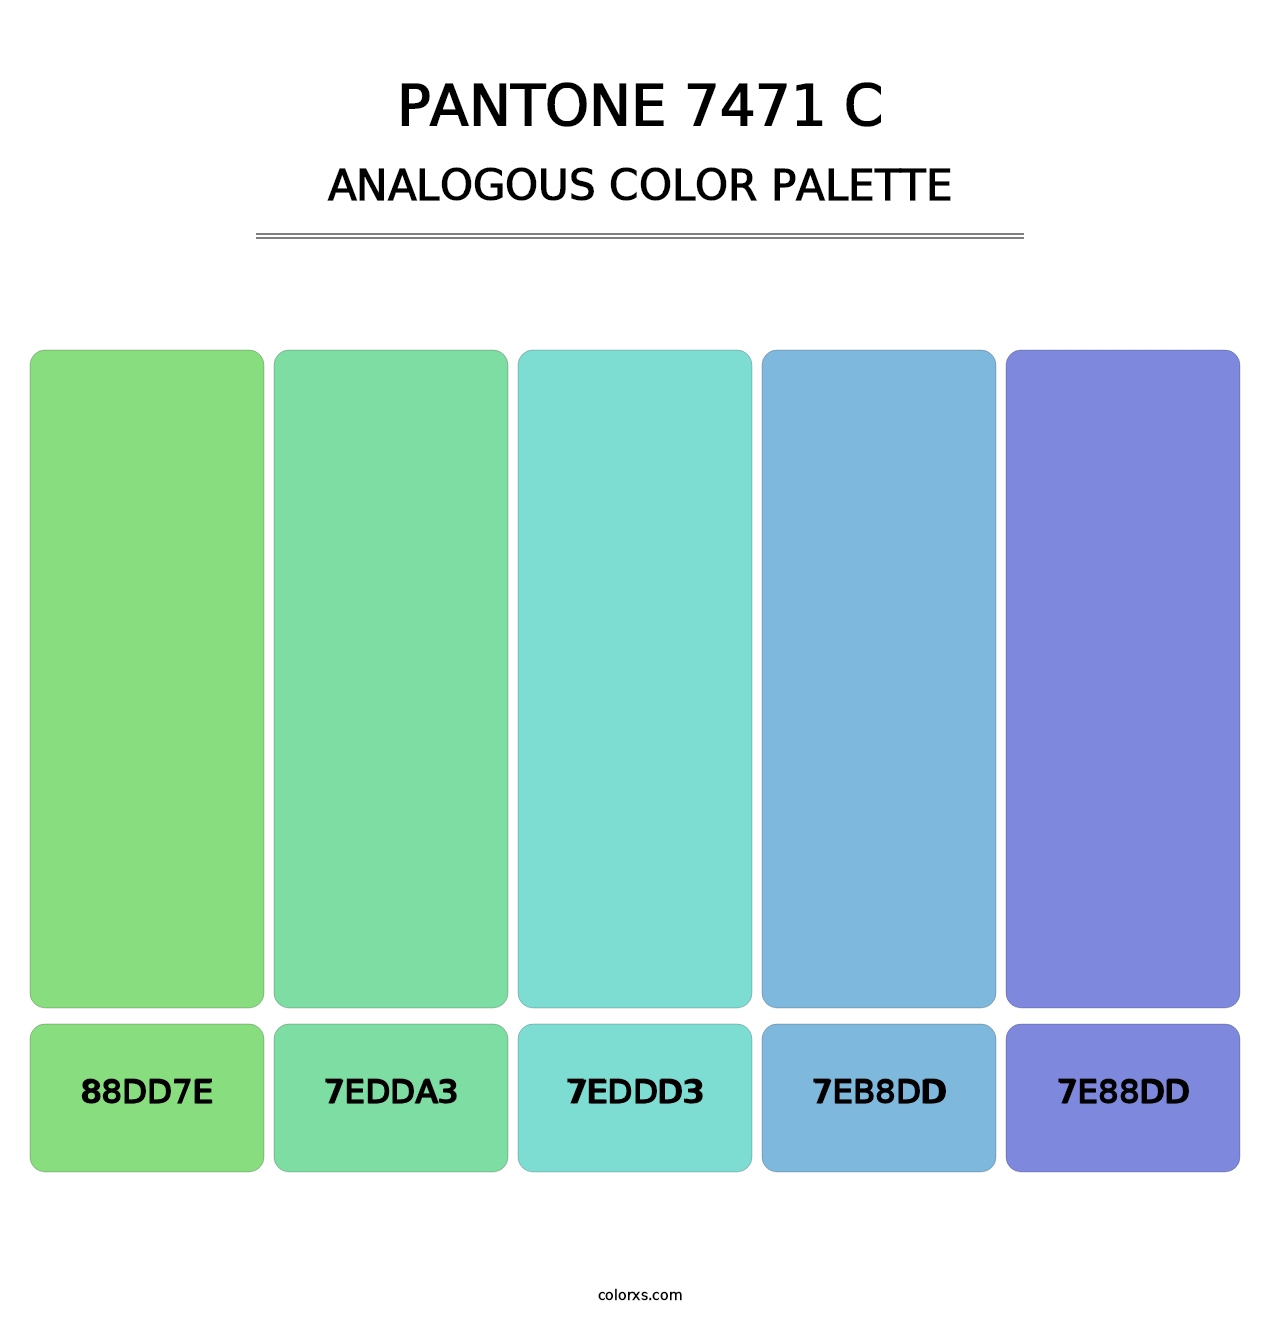 PANTONE 7471 C - Analogous Color Palette